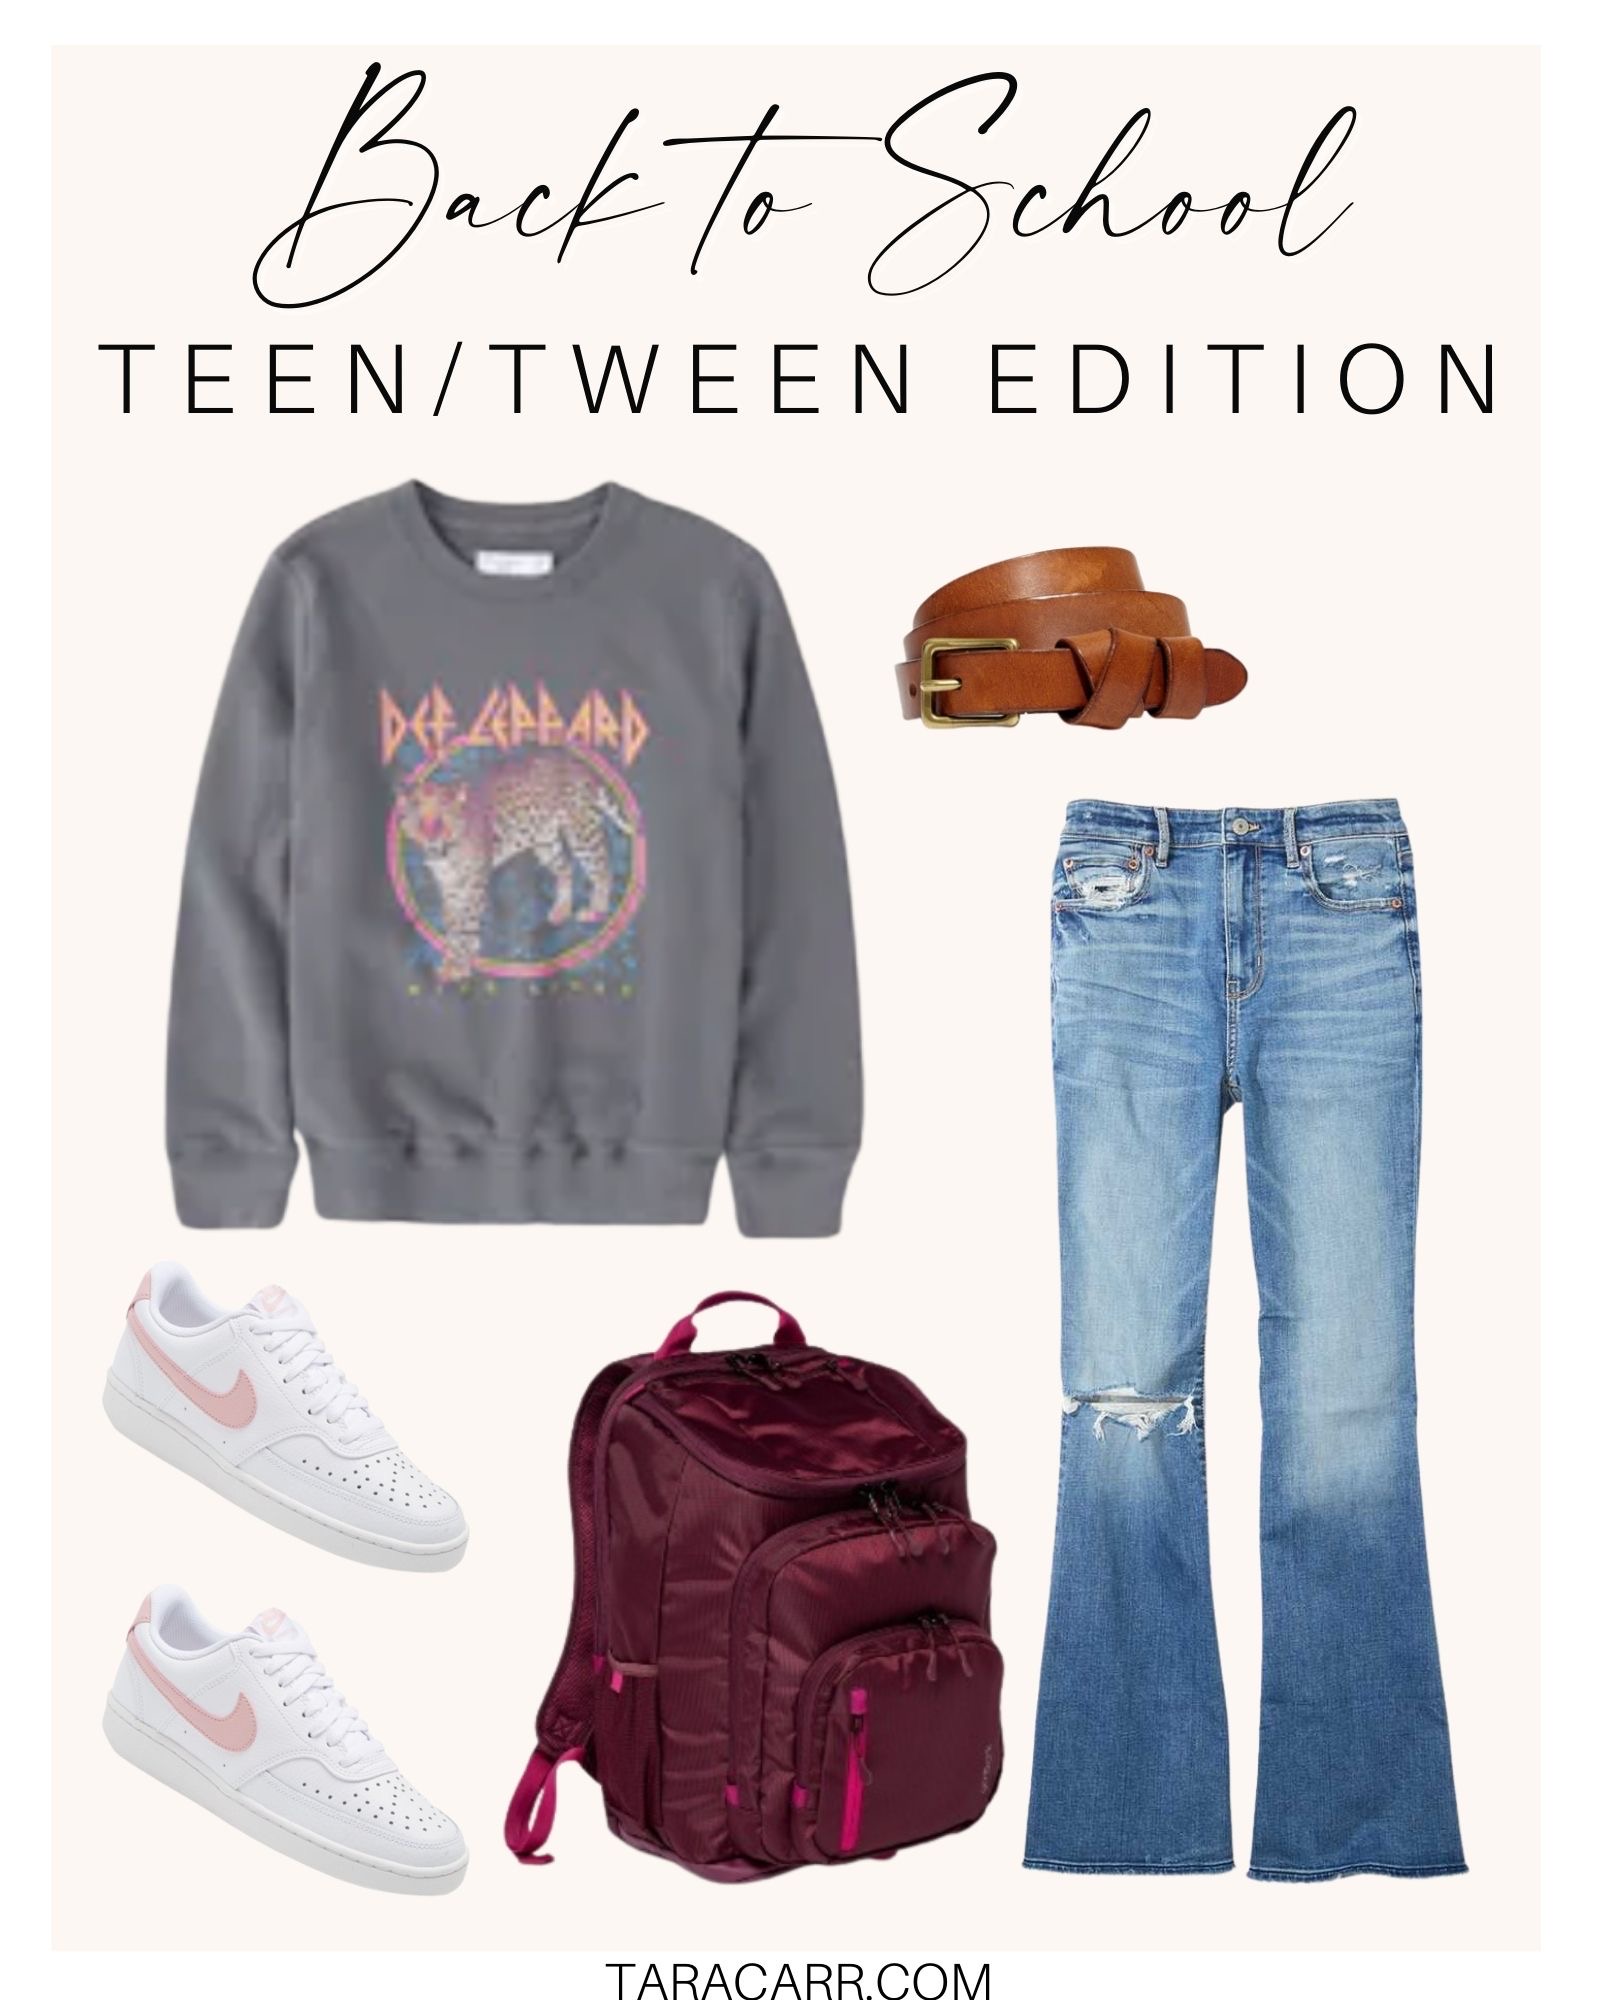 Back to School: Teen/Tween Edition